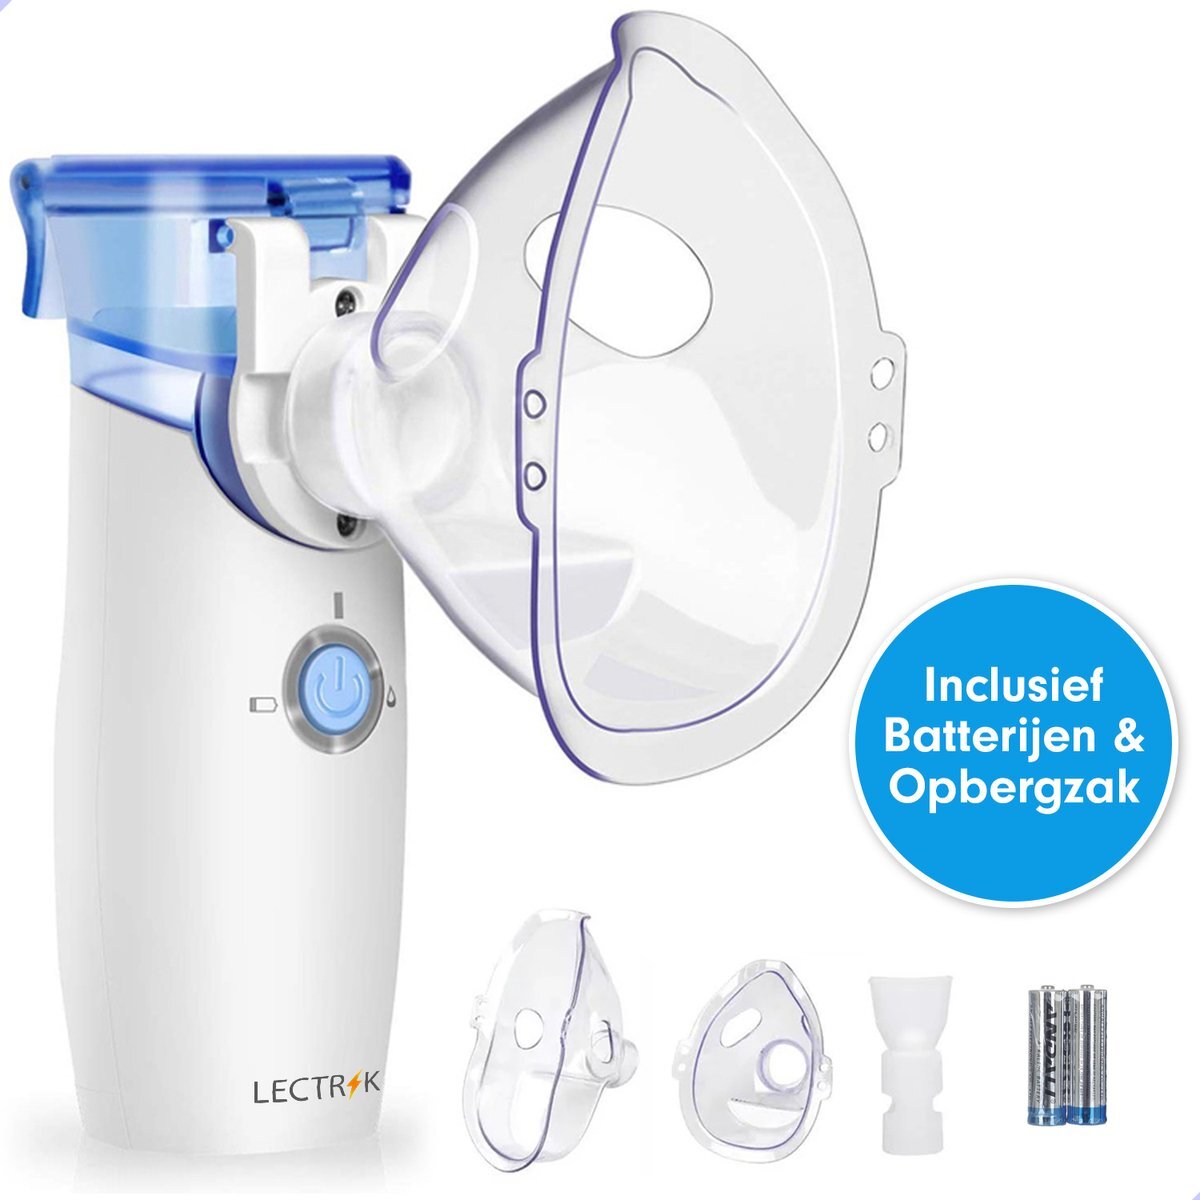 LECTRIK Inhalator - Aerosoltoestel - Vernevelaar - Waterverstuiver - Voor baby & volwassenen - Incl. Batterij / Opberghoes / 3 Mondstukjes